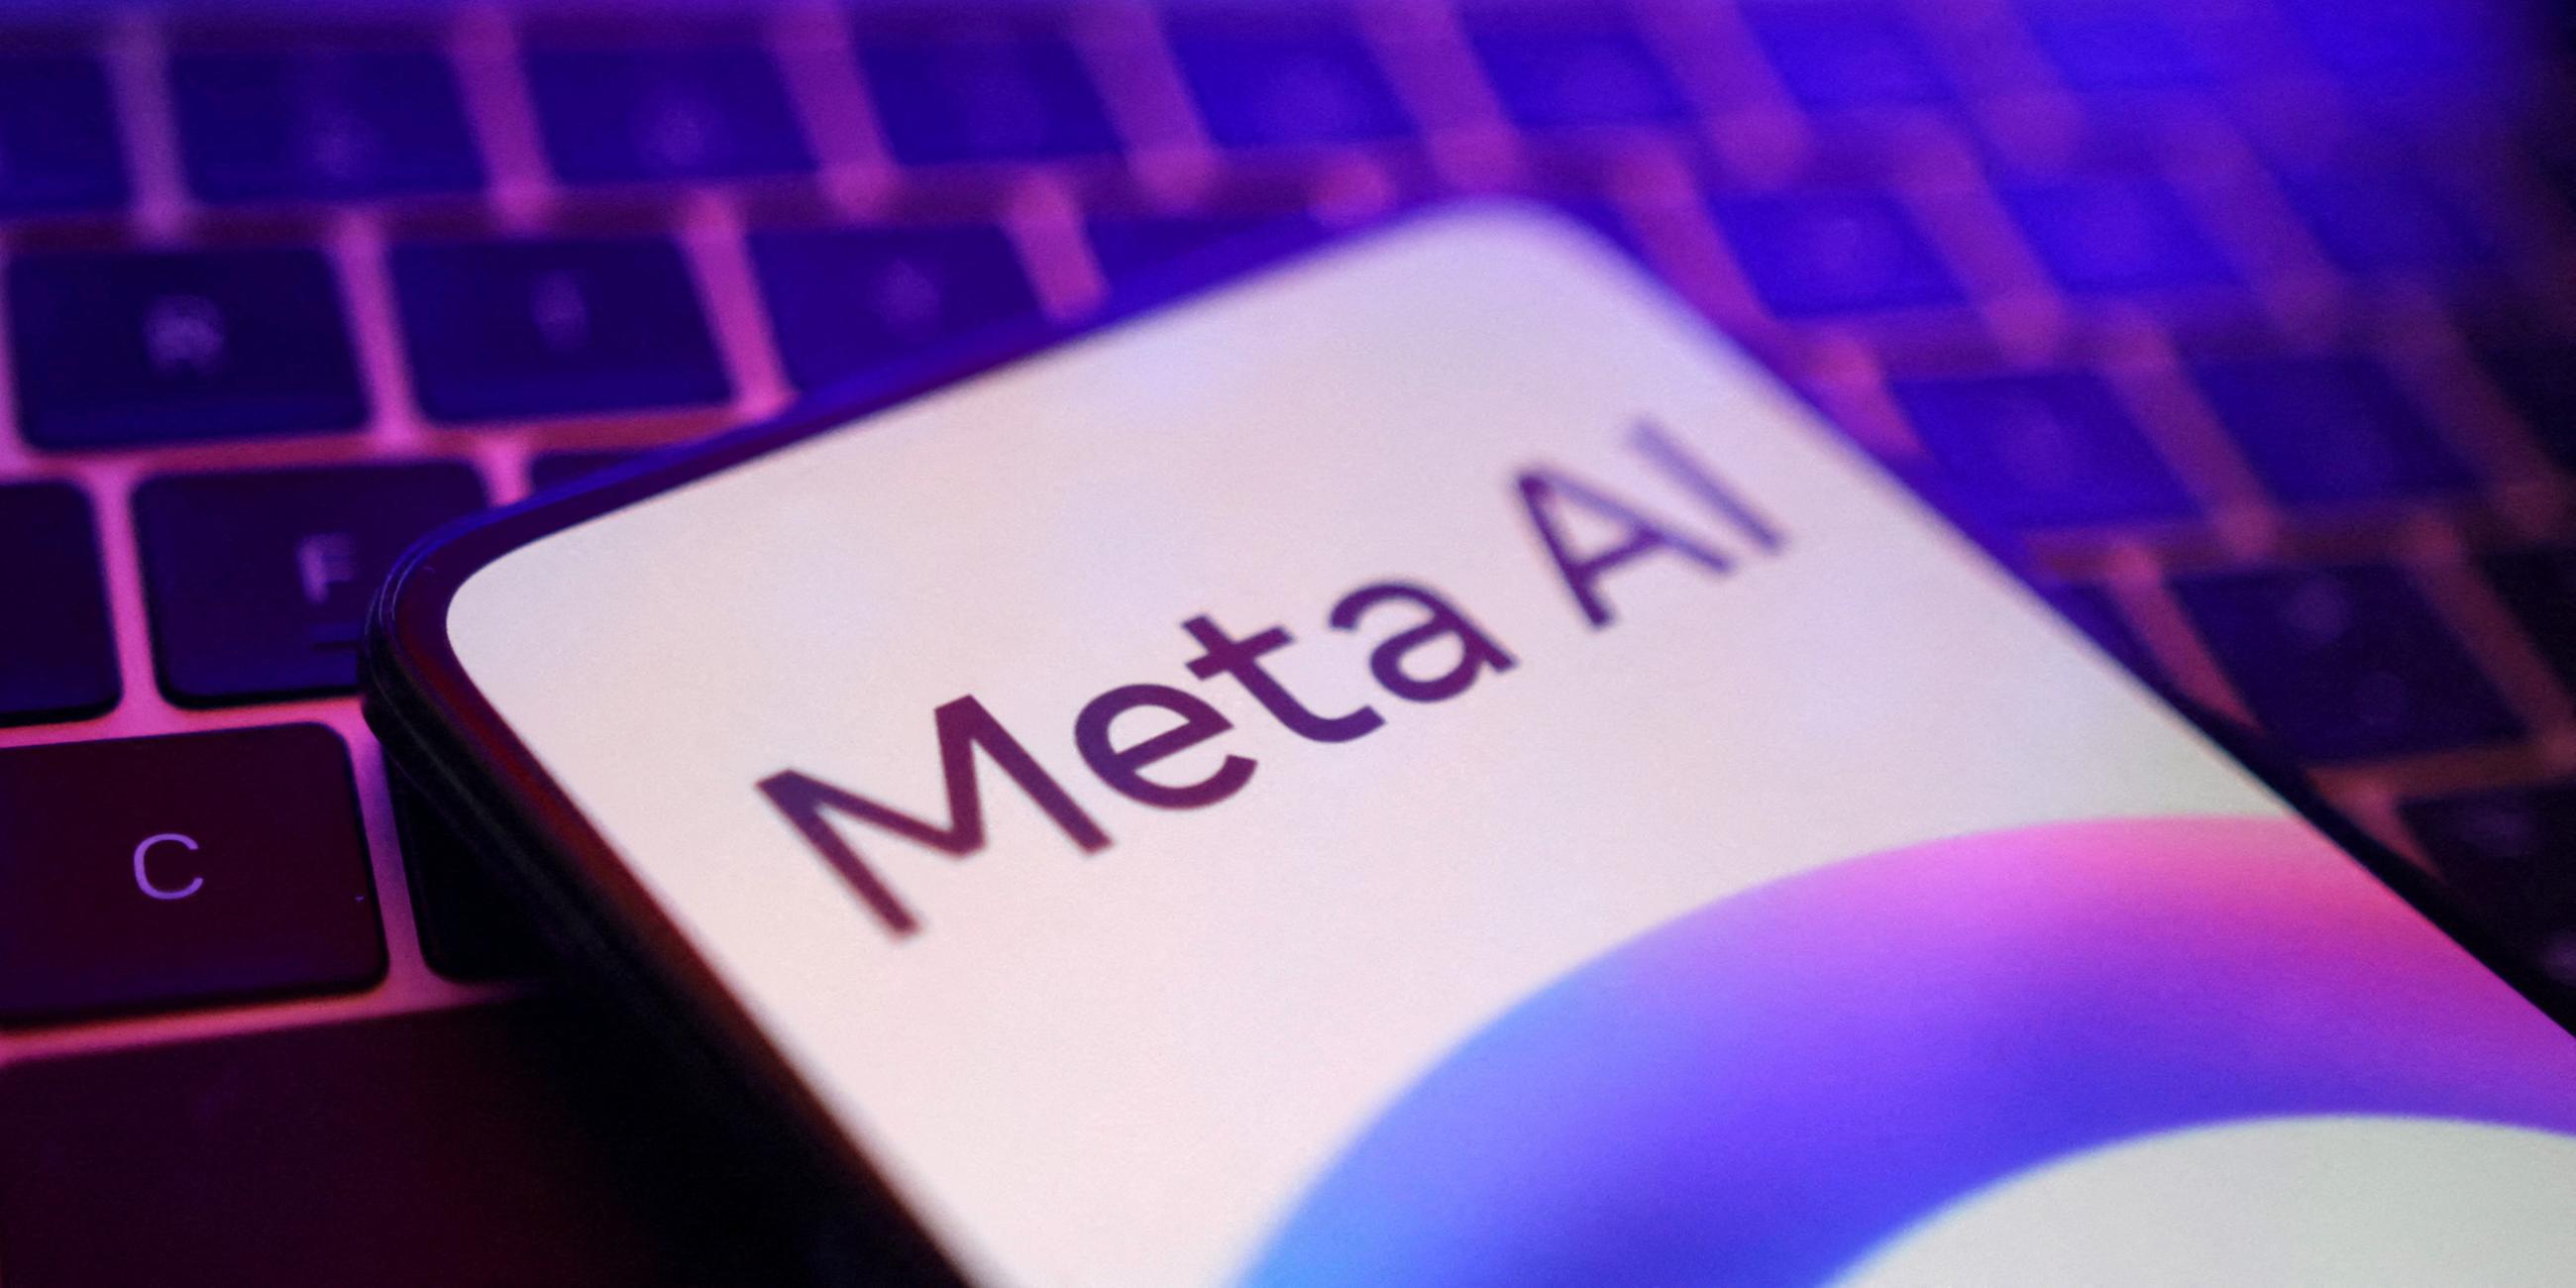 Ein Smartphone liegt auf einer Computertastatur, auf dem Smartphonebildschirm wird "Meta AI" angezeigt.